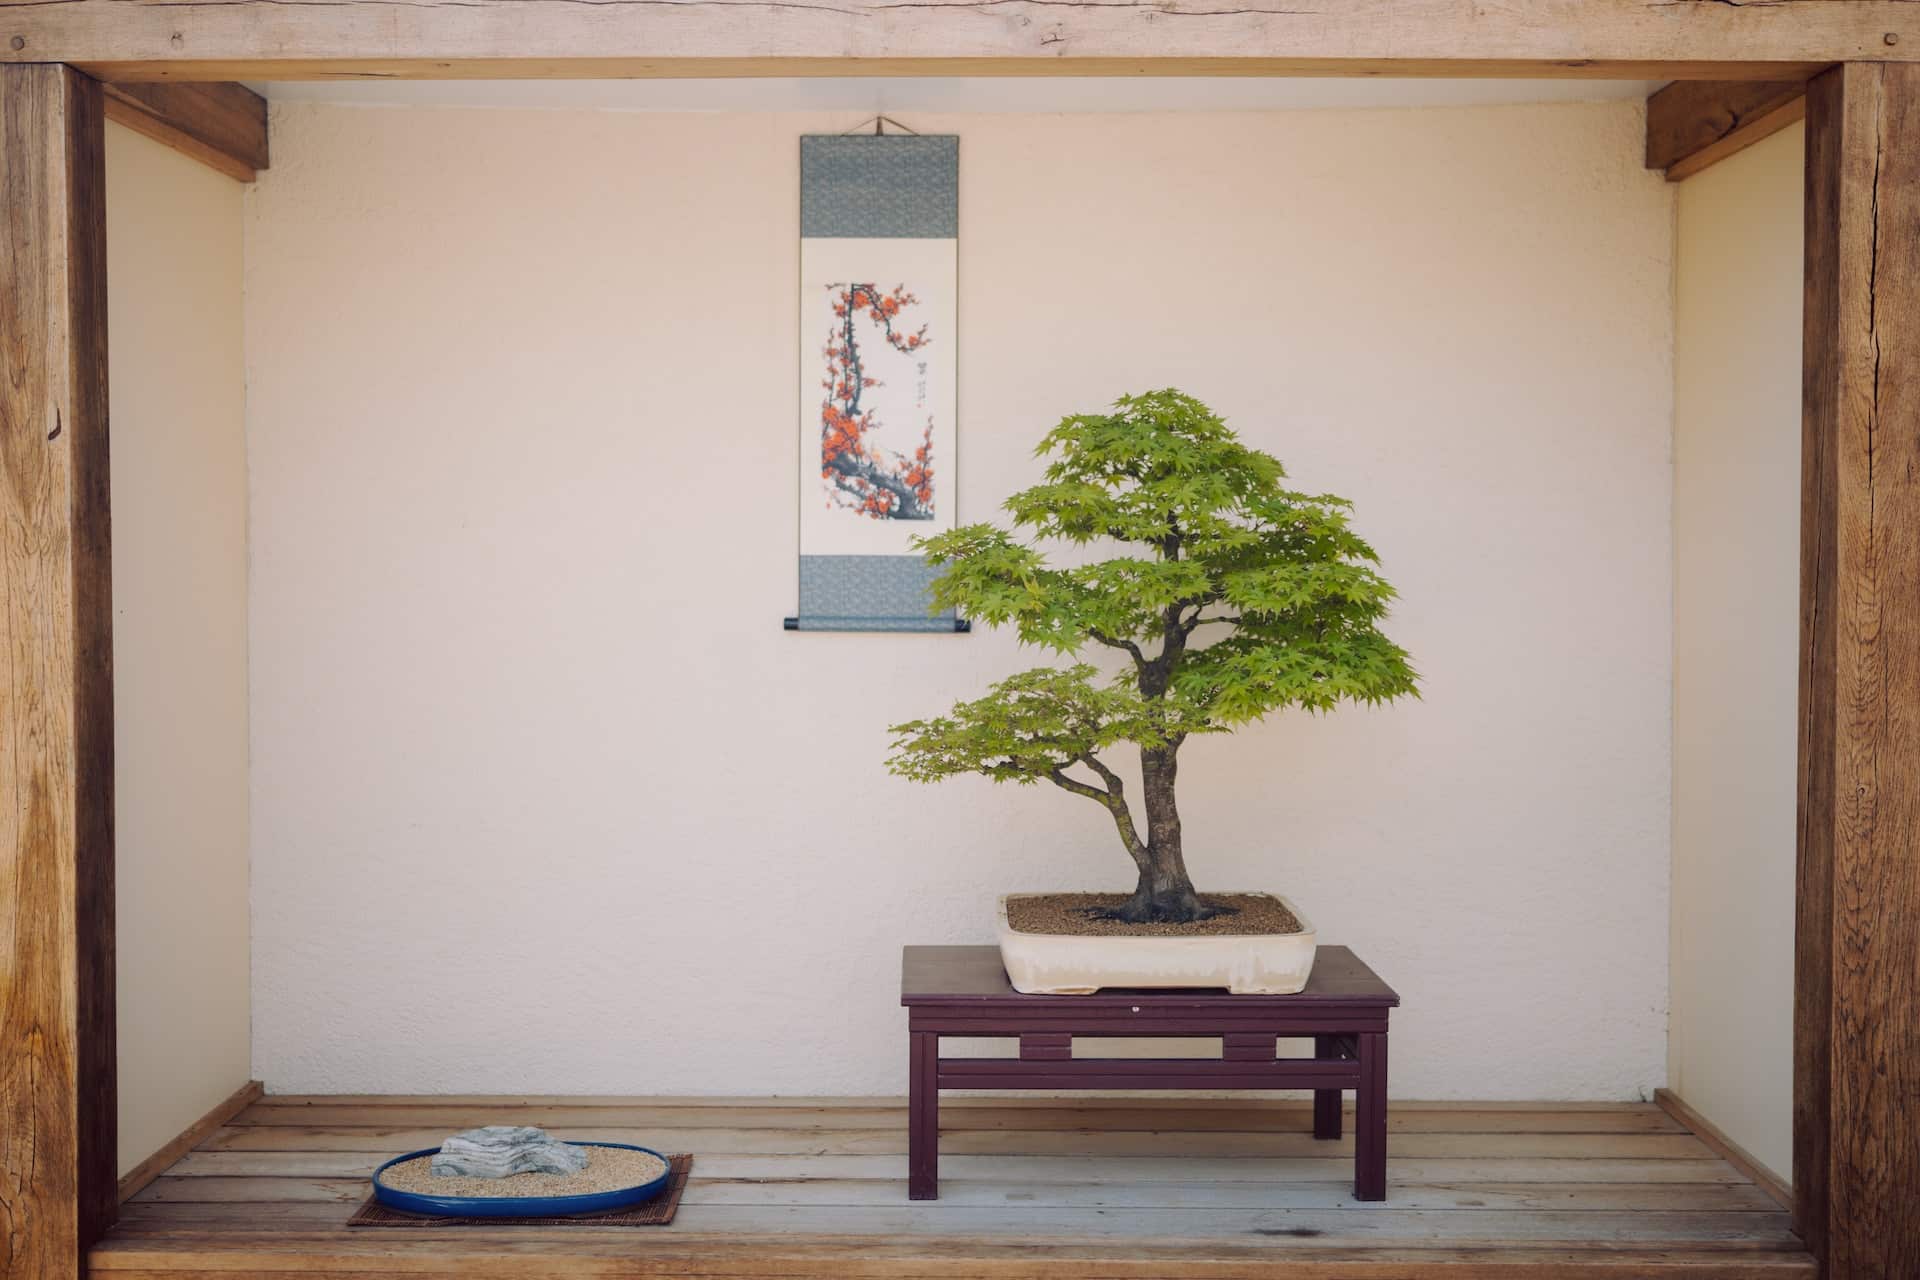 Le bonsaï ficus, un arbre idéal pour les débutants